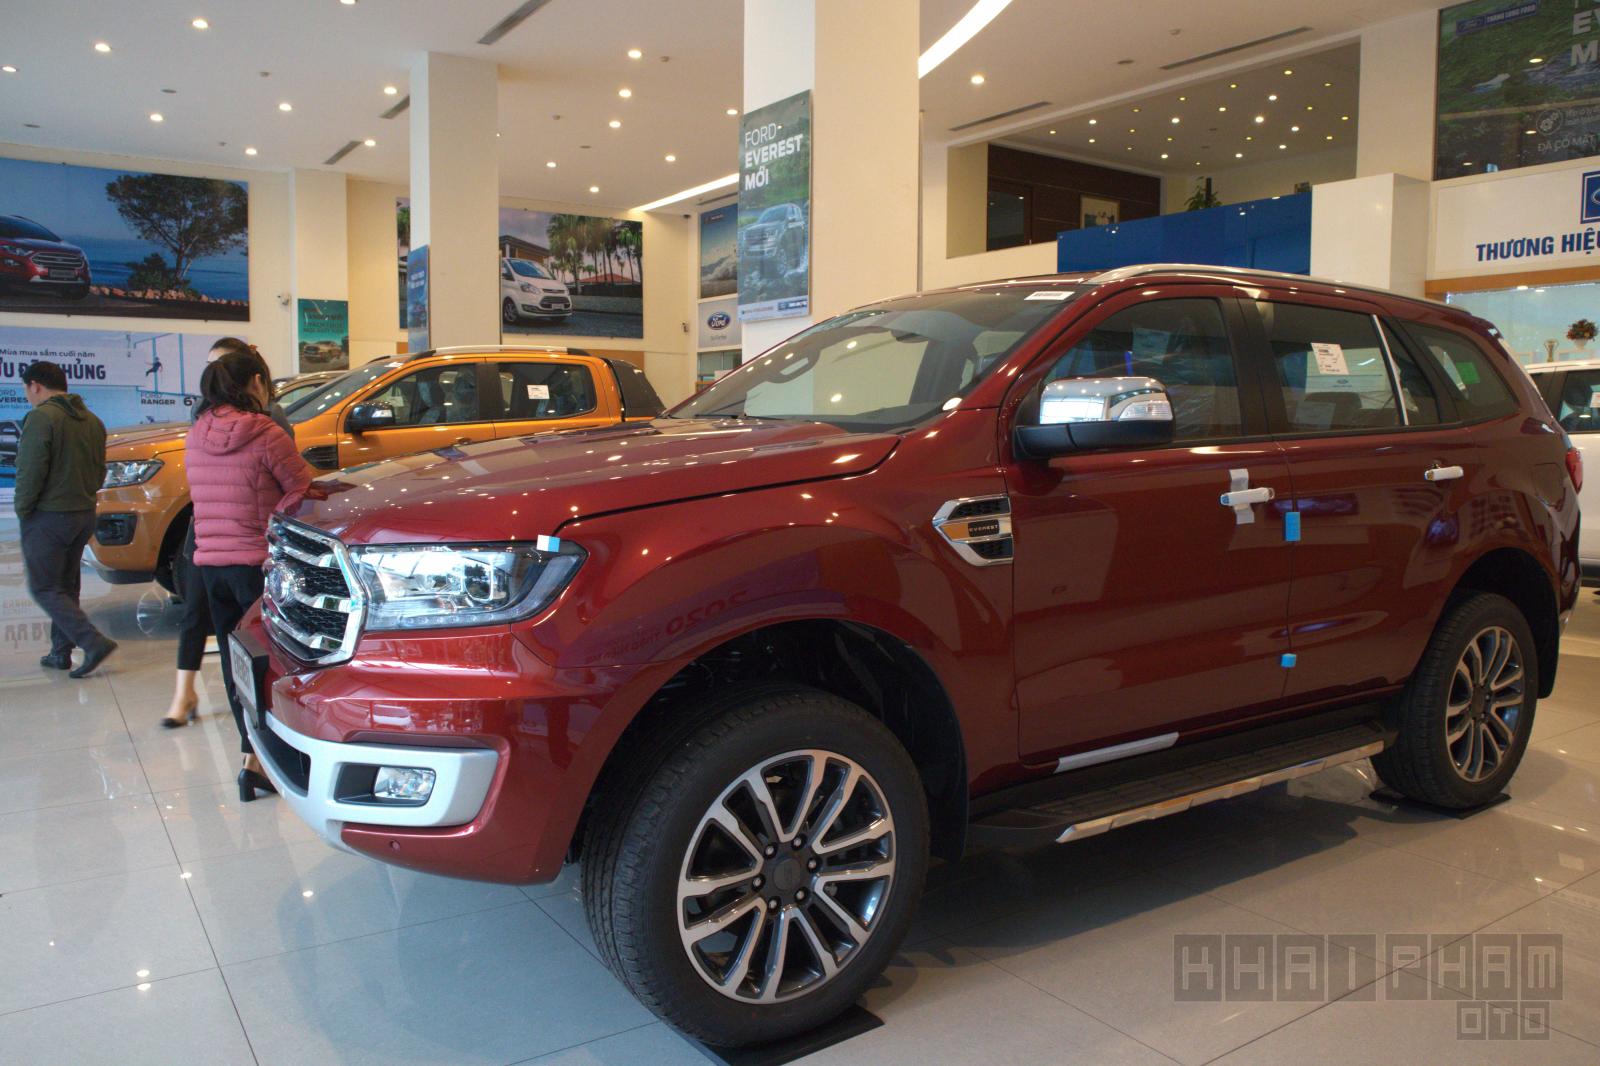 Giữa tâm bão chảy, Ford Everest giảm giá hơn 100 triệu đồng dù vừa nâng cấp trang bị  a1